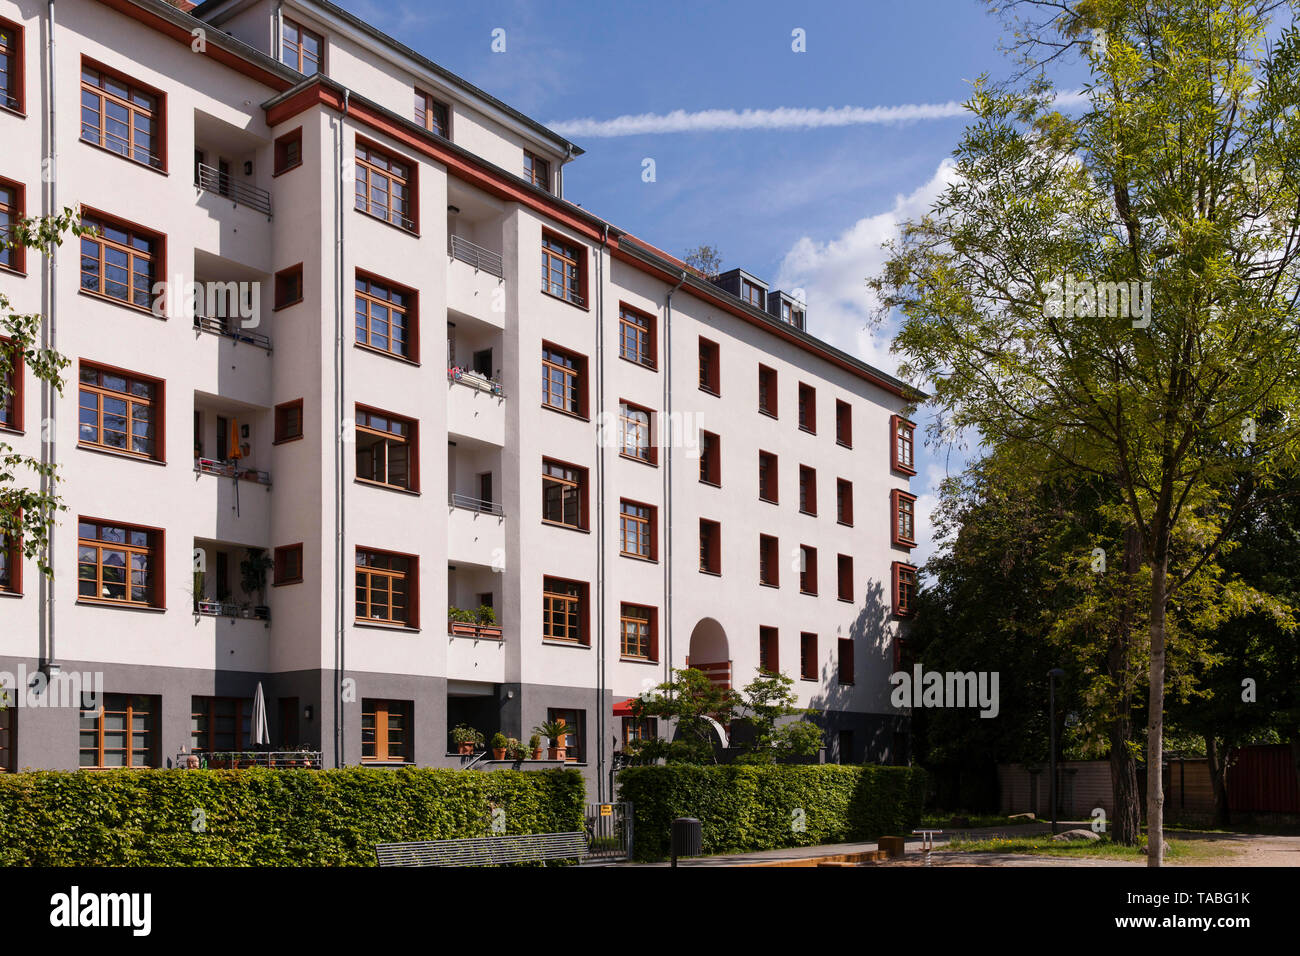 Il Naumann complesso residenziale nel quartiere Riehl, costruita negli anni 1927-29, Colonia, Germania. die Naumannsiedlung im Stadtteil Riehl, in den Jahr Foto Stock